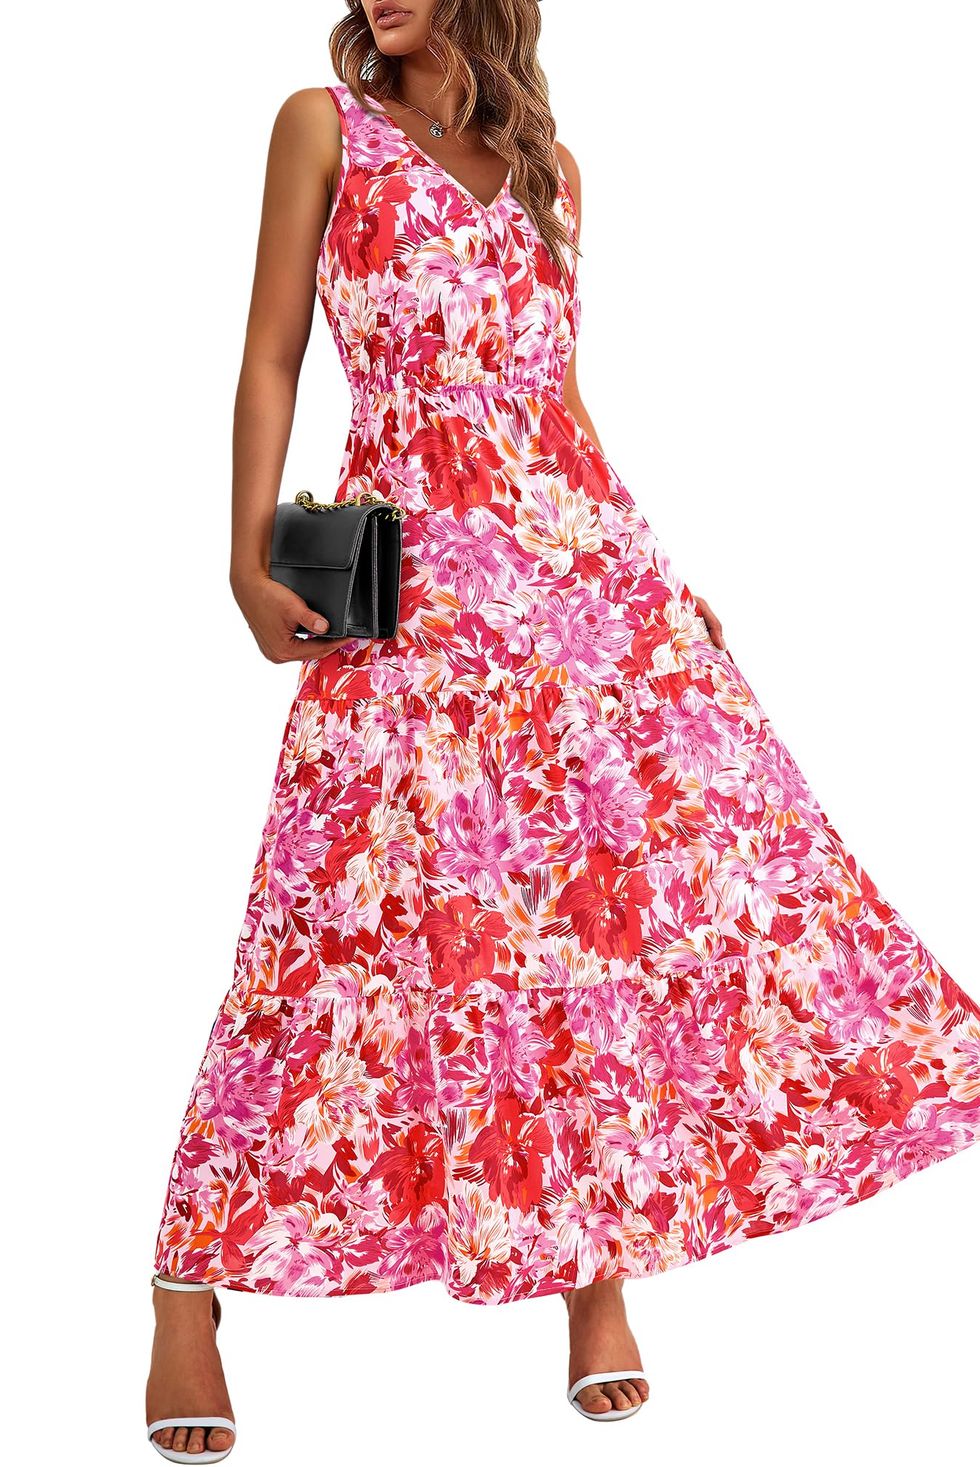 Floral A-Line Summer Dress